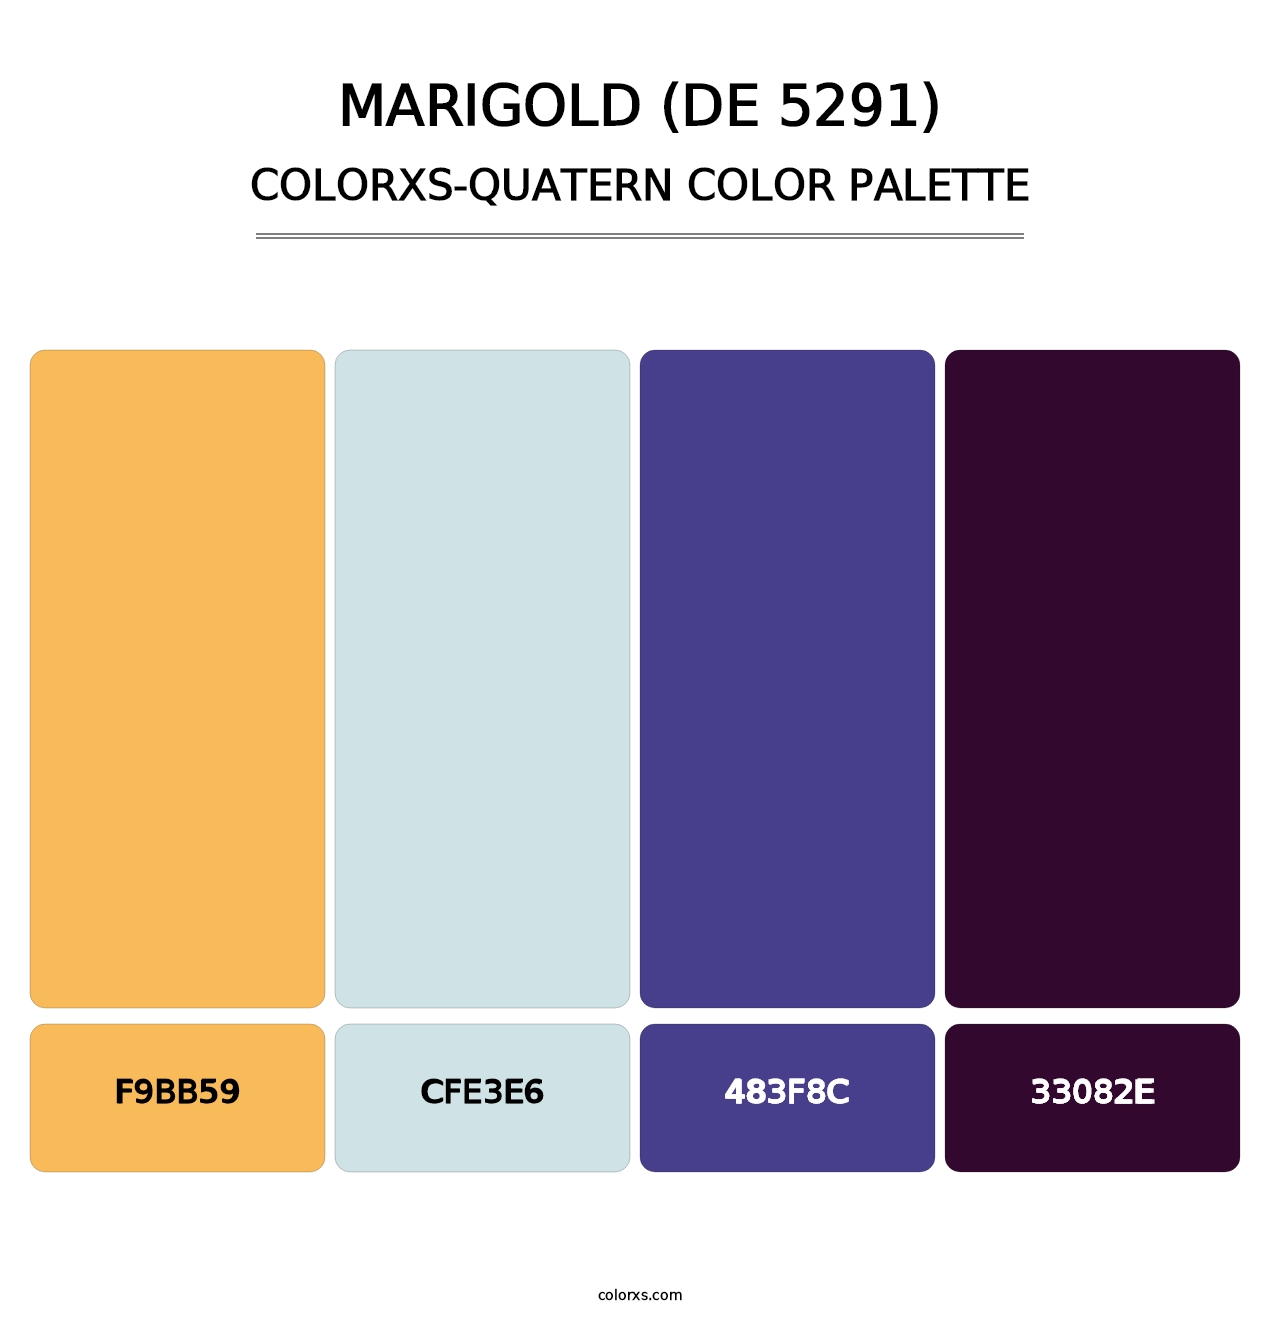 Marigold (DE 5291) - Colorxs Quatern Palette